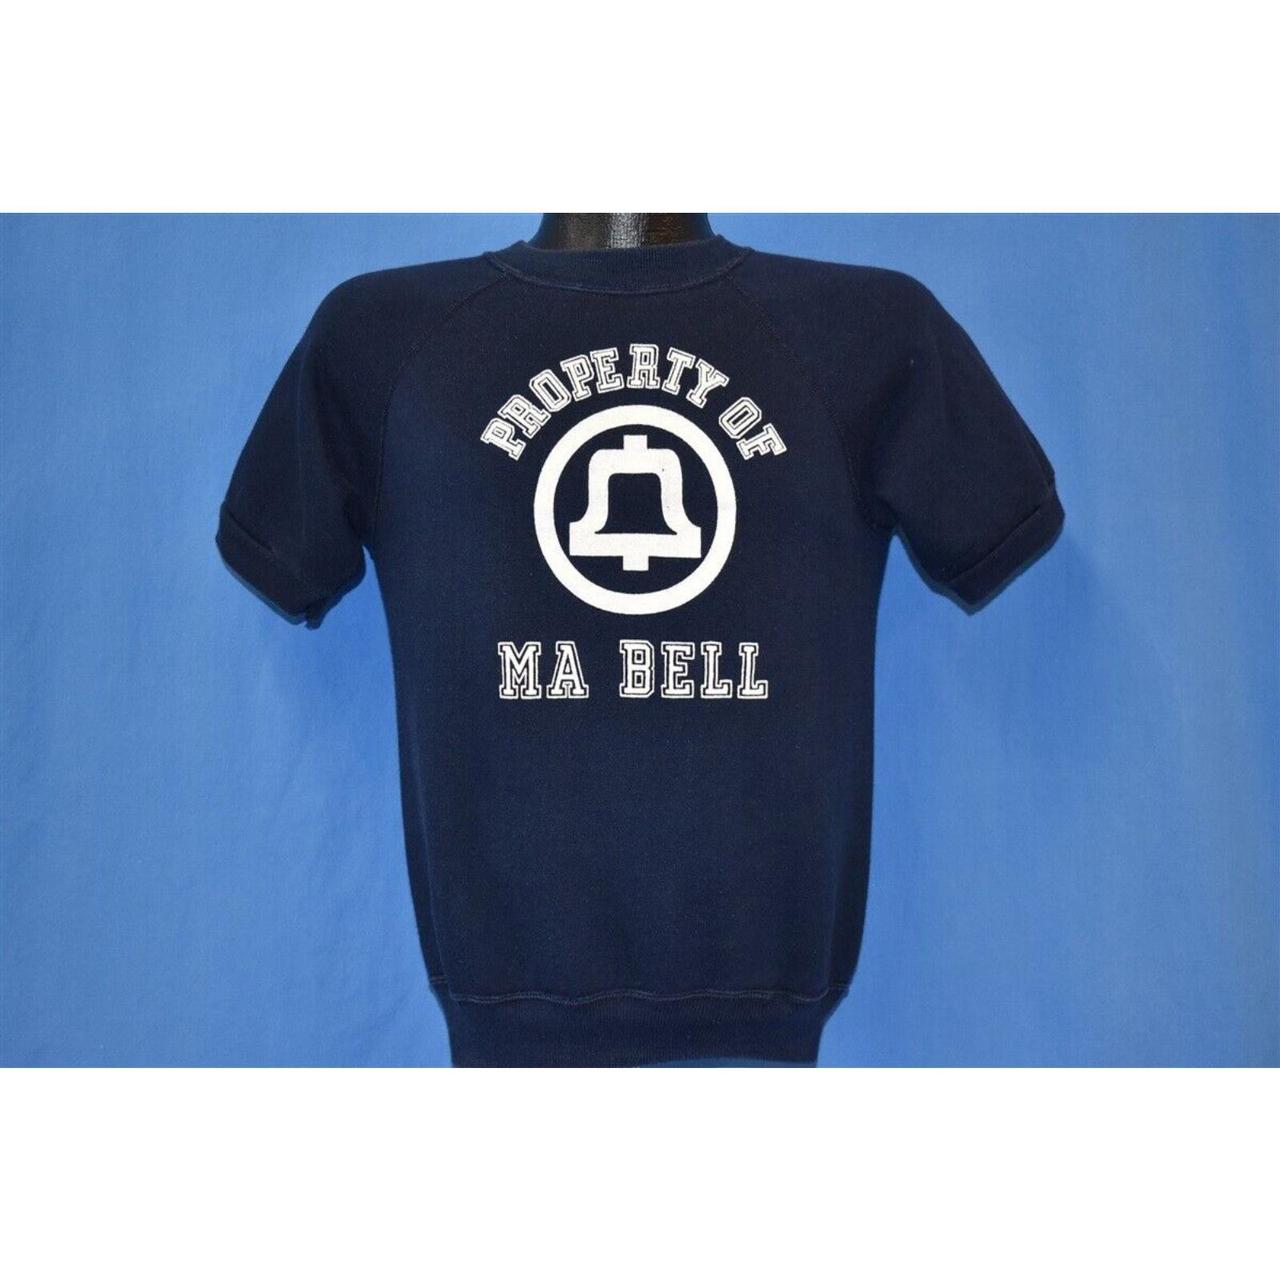 Bell Men's Sweatshirt (2)